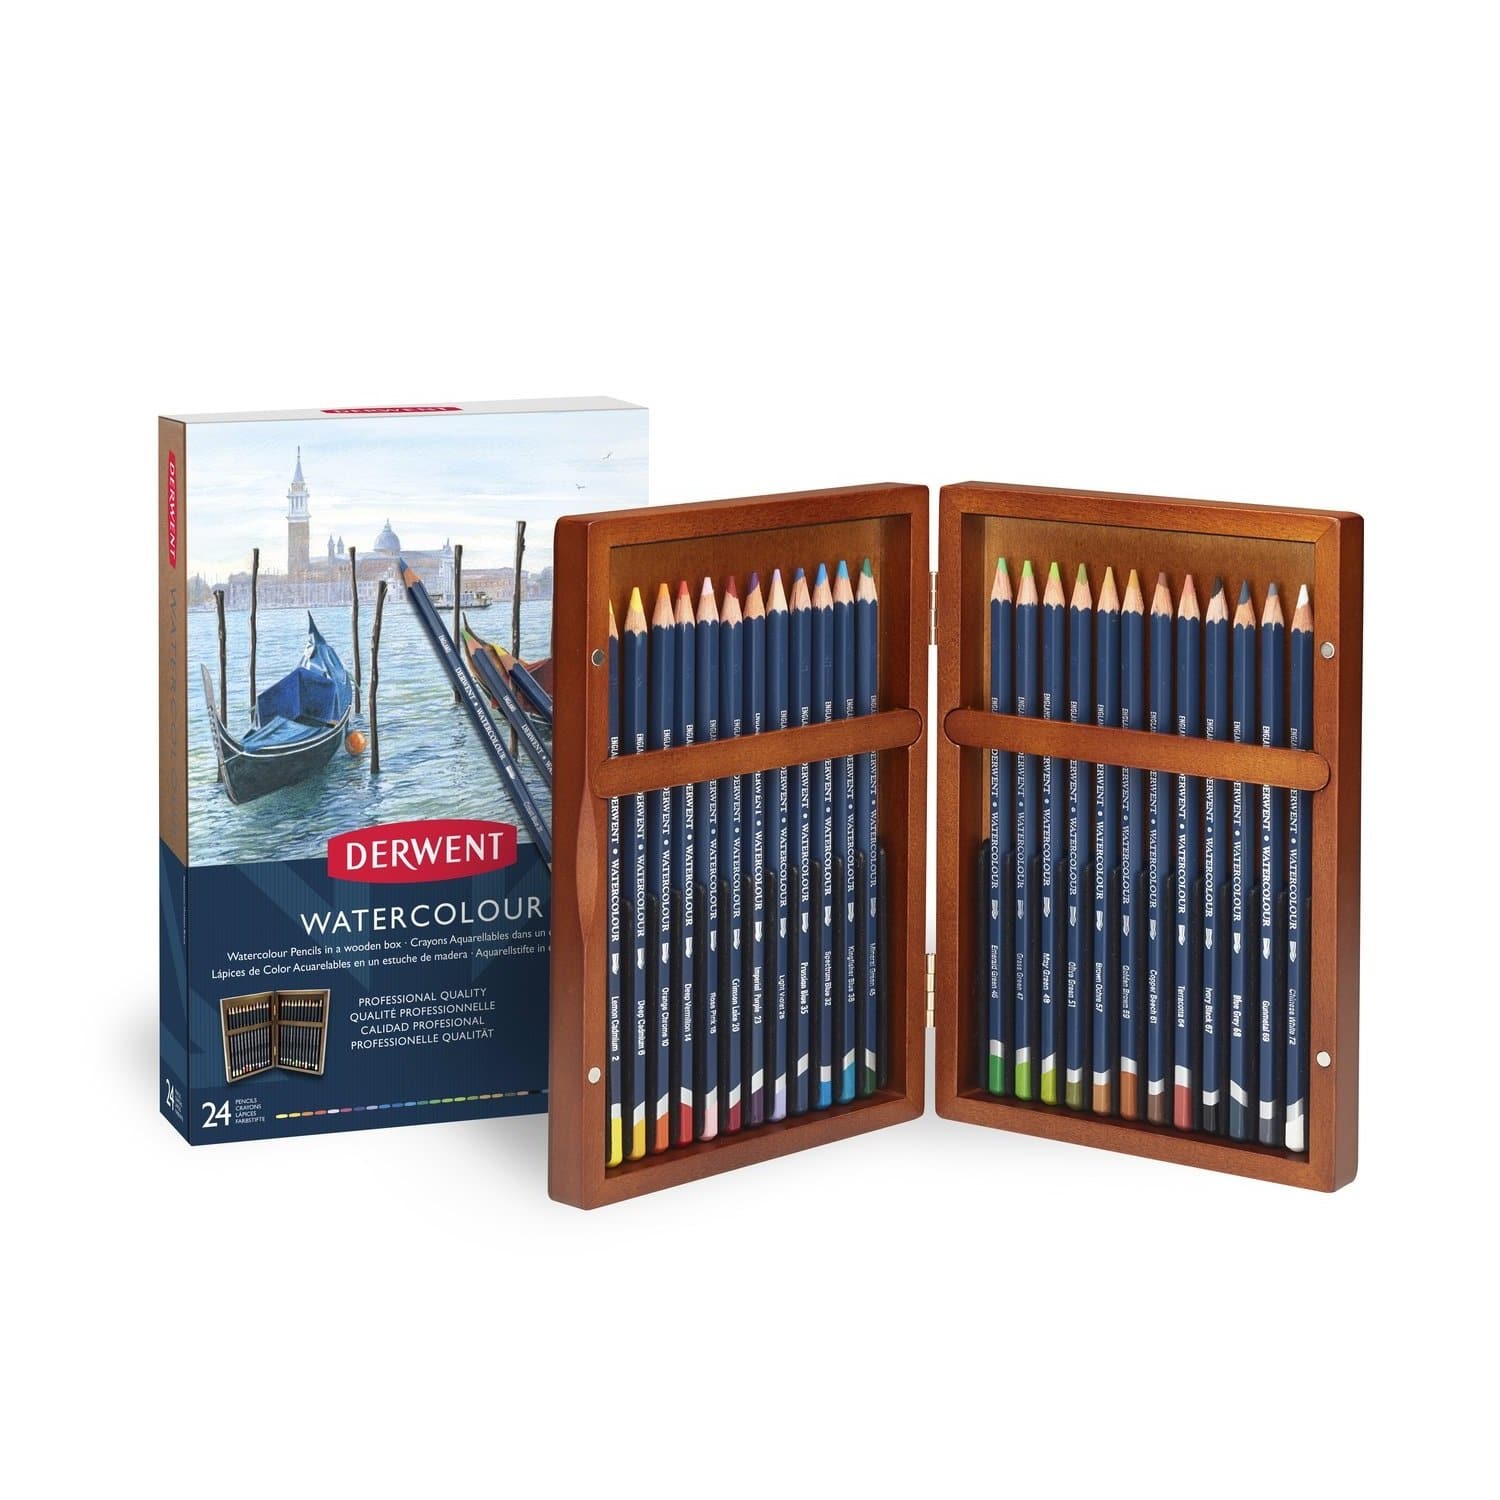 Derwent - Estuche de madera con 24 lápices de colores acuarelables no.2300152 colección de regalo